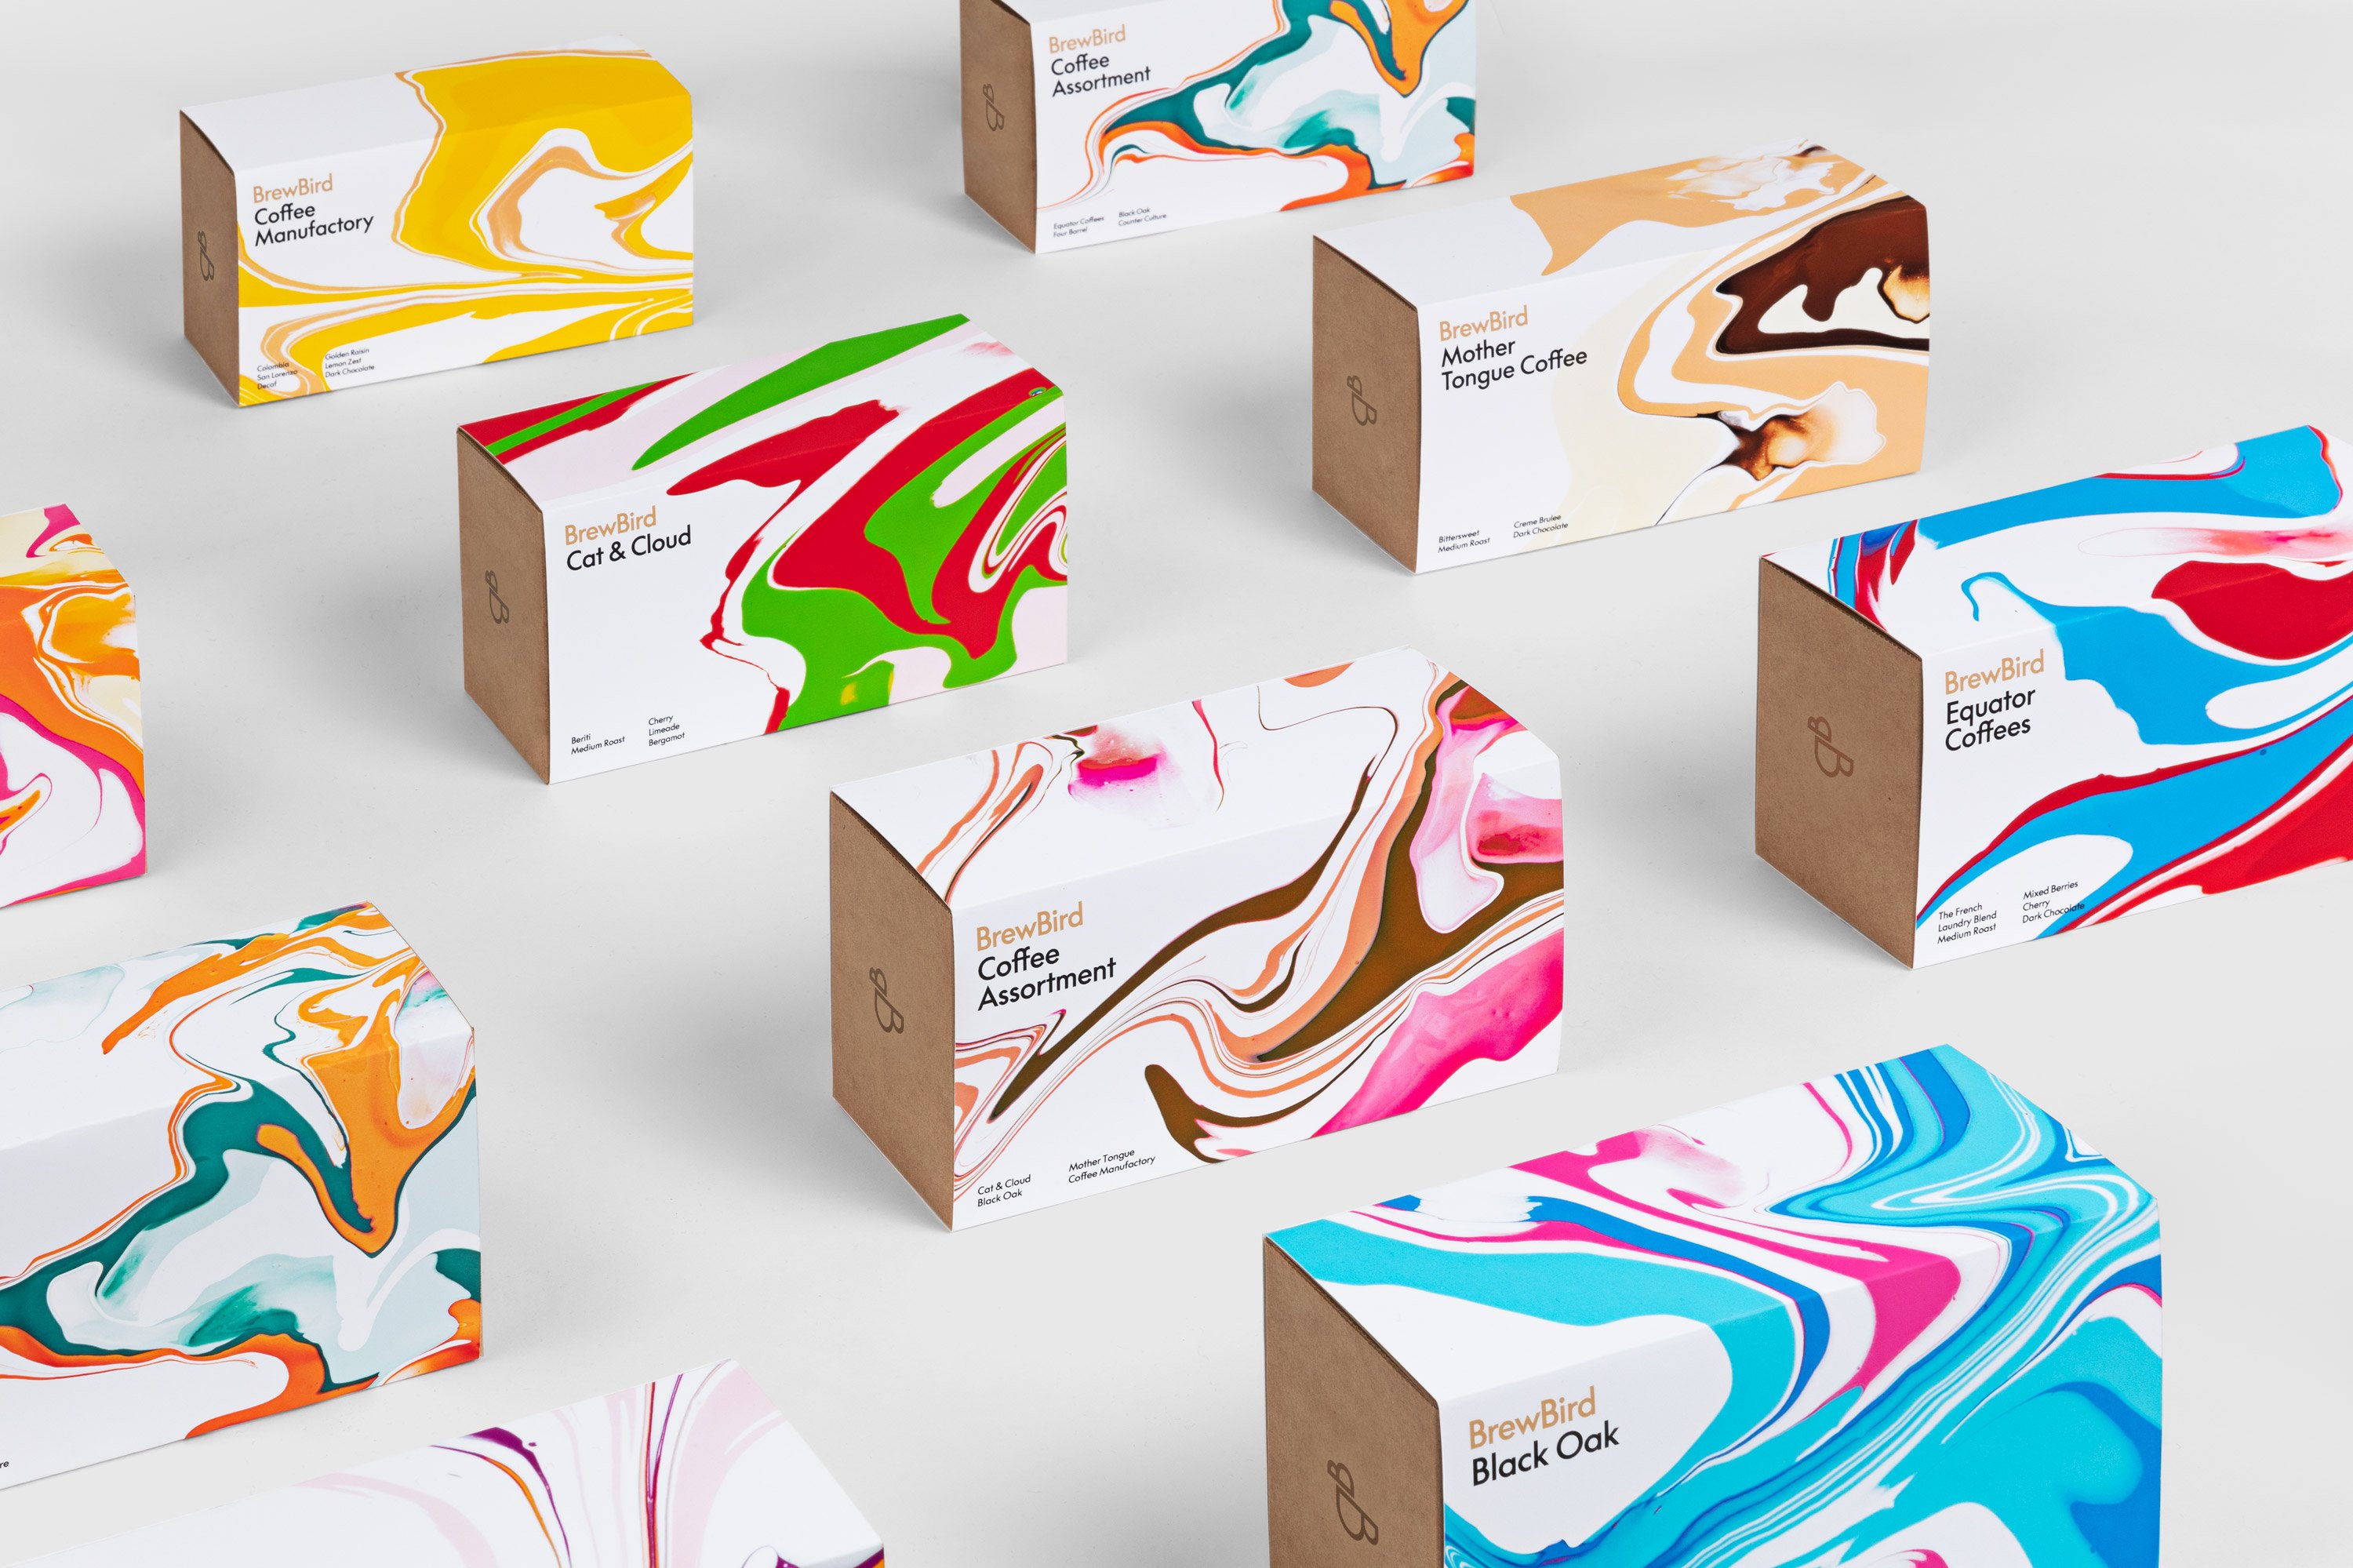 Verpakkingsontwerp van kraftpapier met kleurrijke hoes voor BrewBird, een koffiepadbedrijf in San Francisco, ontworpen door Mucho